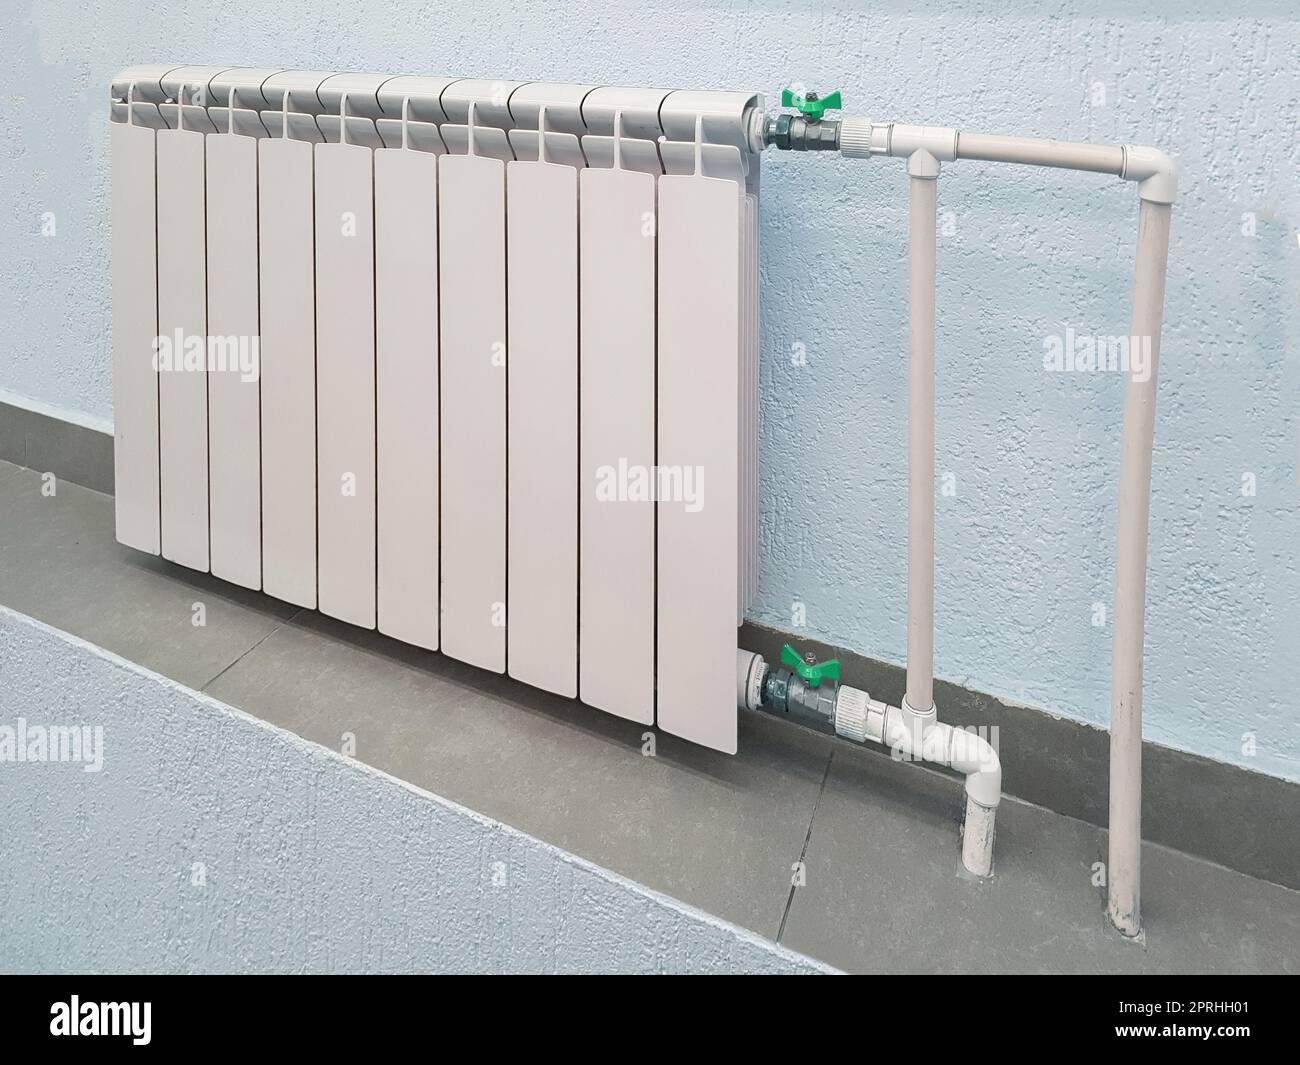 Batteria bianca per radiatore in alluminio moderno per riscaldamento ad acqua calda, sullo sfondo di una parete all'interno di un appartamento o di un ufficio Foto Stock